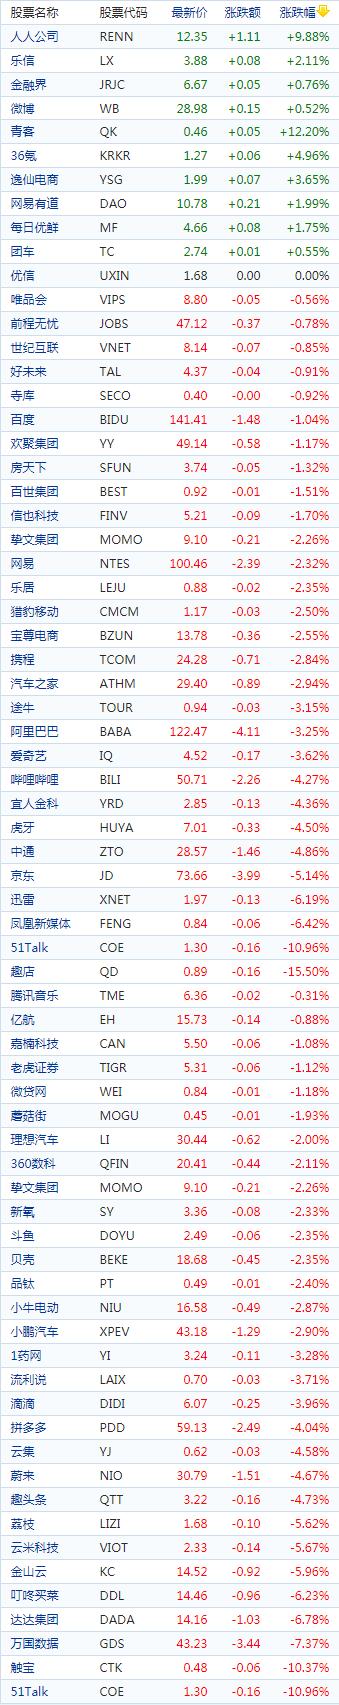 中国概念股周三收盘多数下跌电商股普跌趣店重挫逾15%